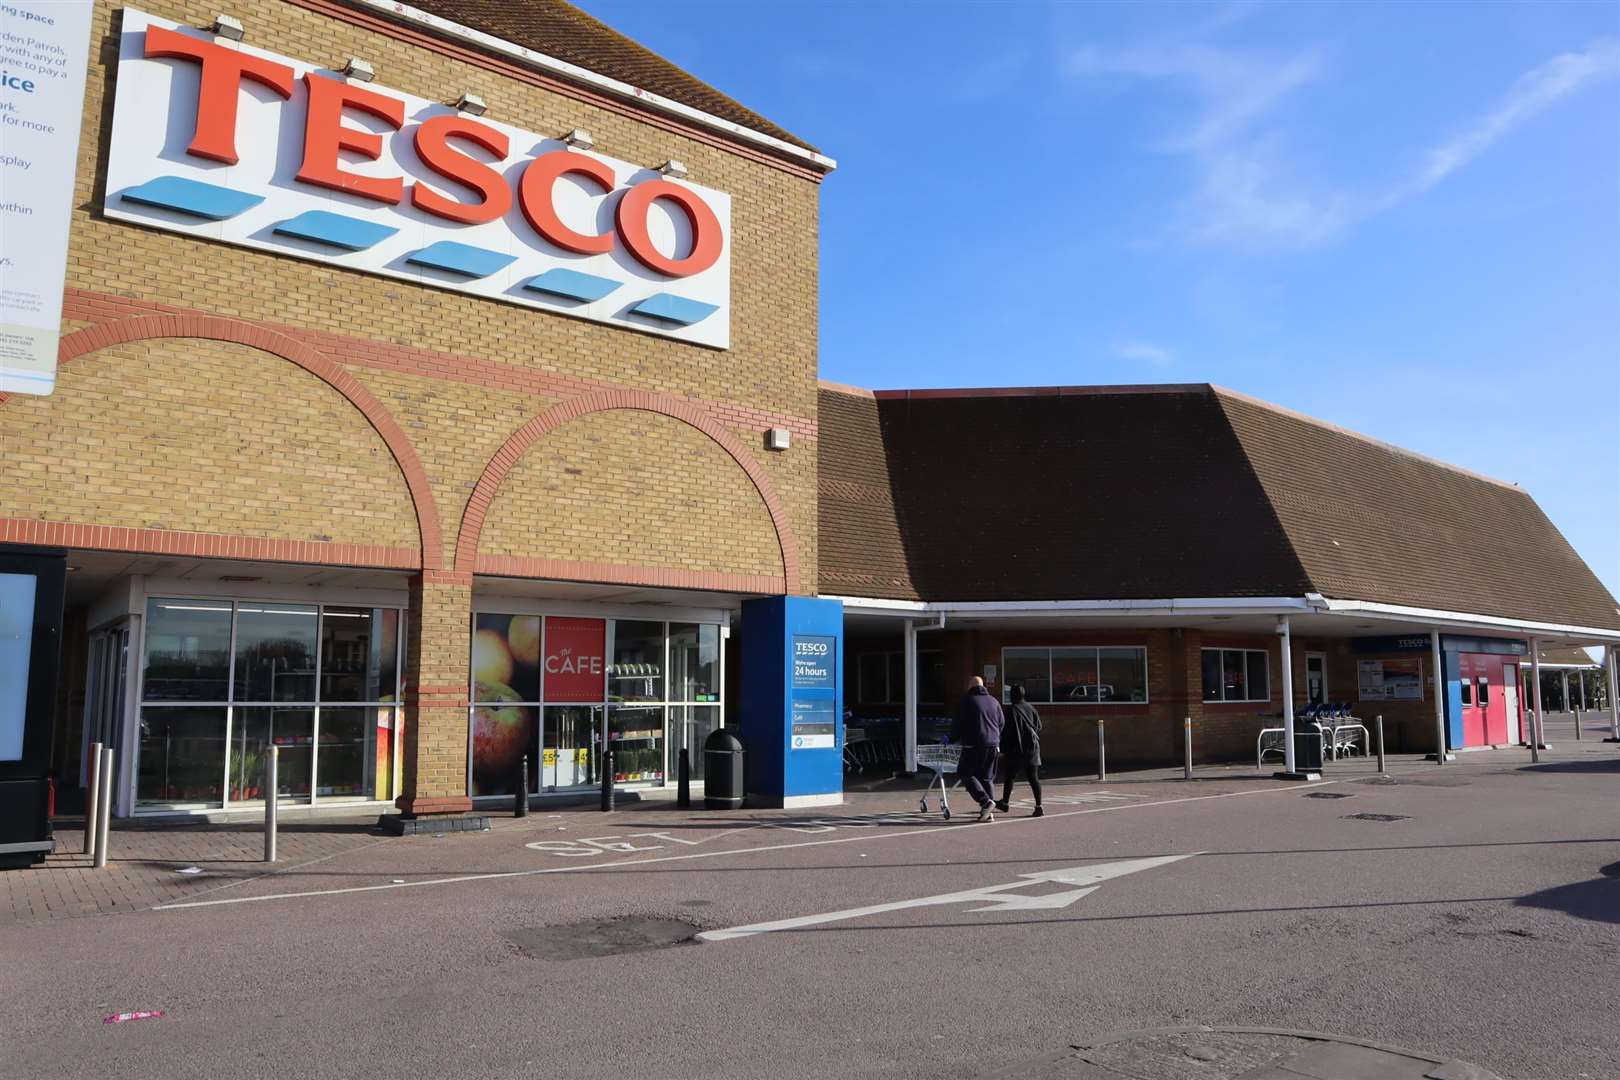 Tesco supermarket in Bridge Road, Sheerness, is being revamped